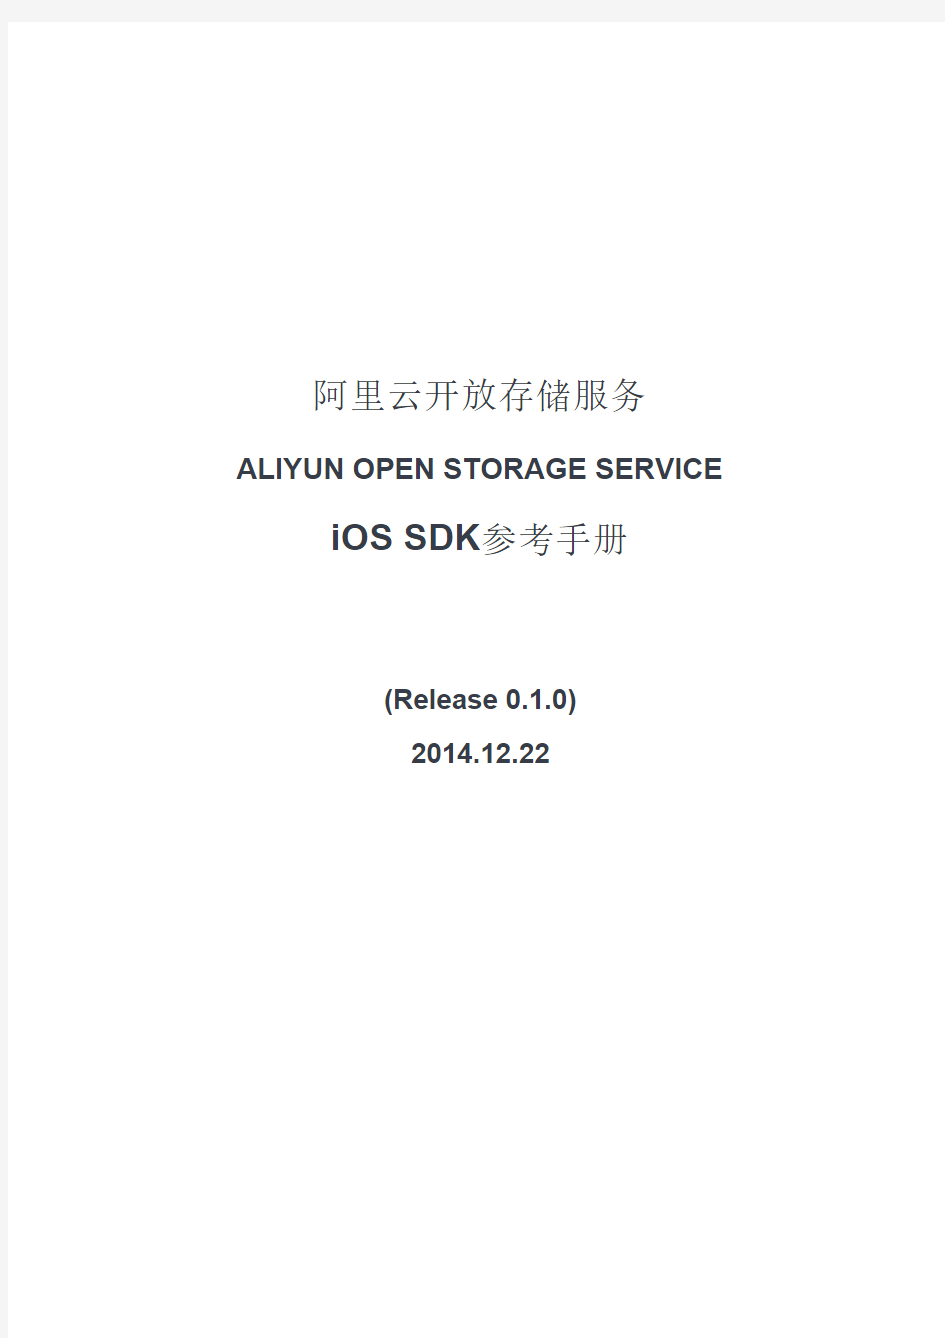 help-oss-aliyun_OSS_iOS_SDK_DEV_Guide_20141222